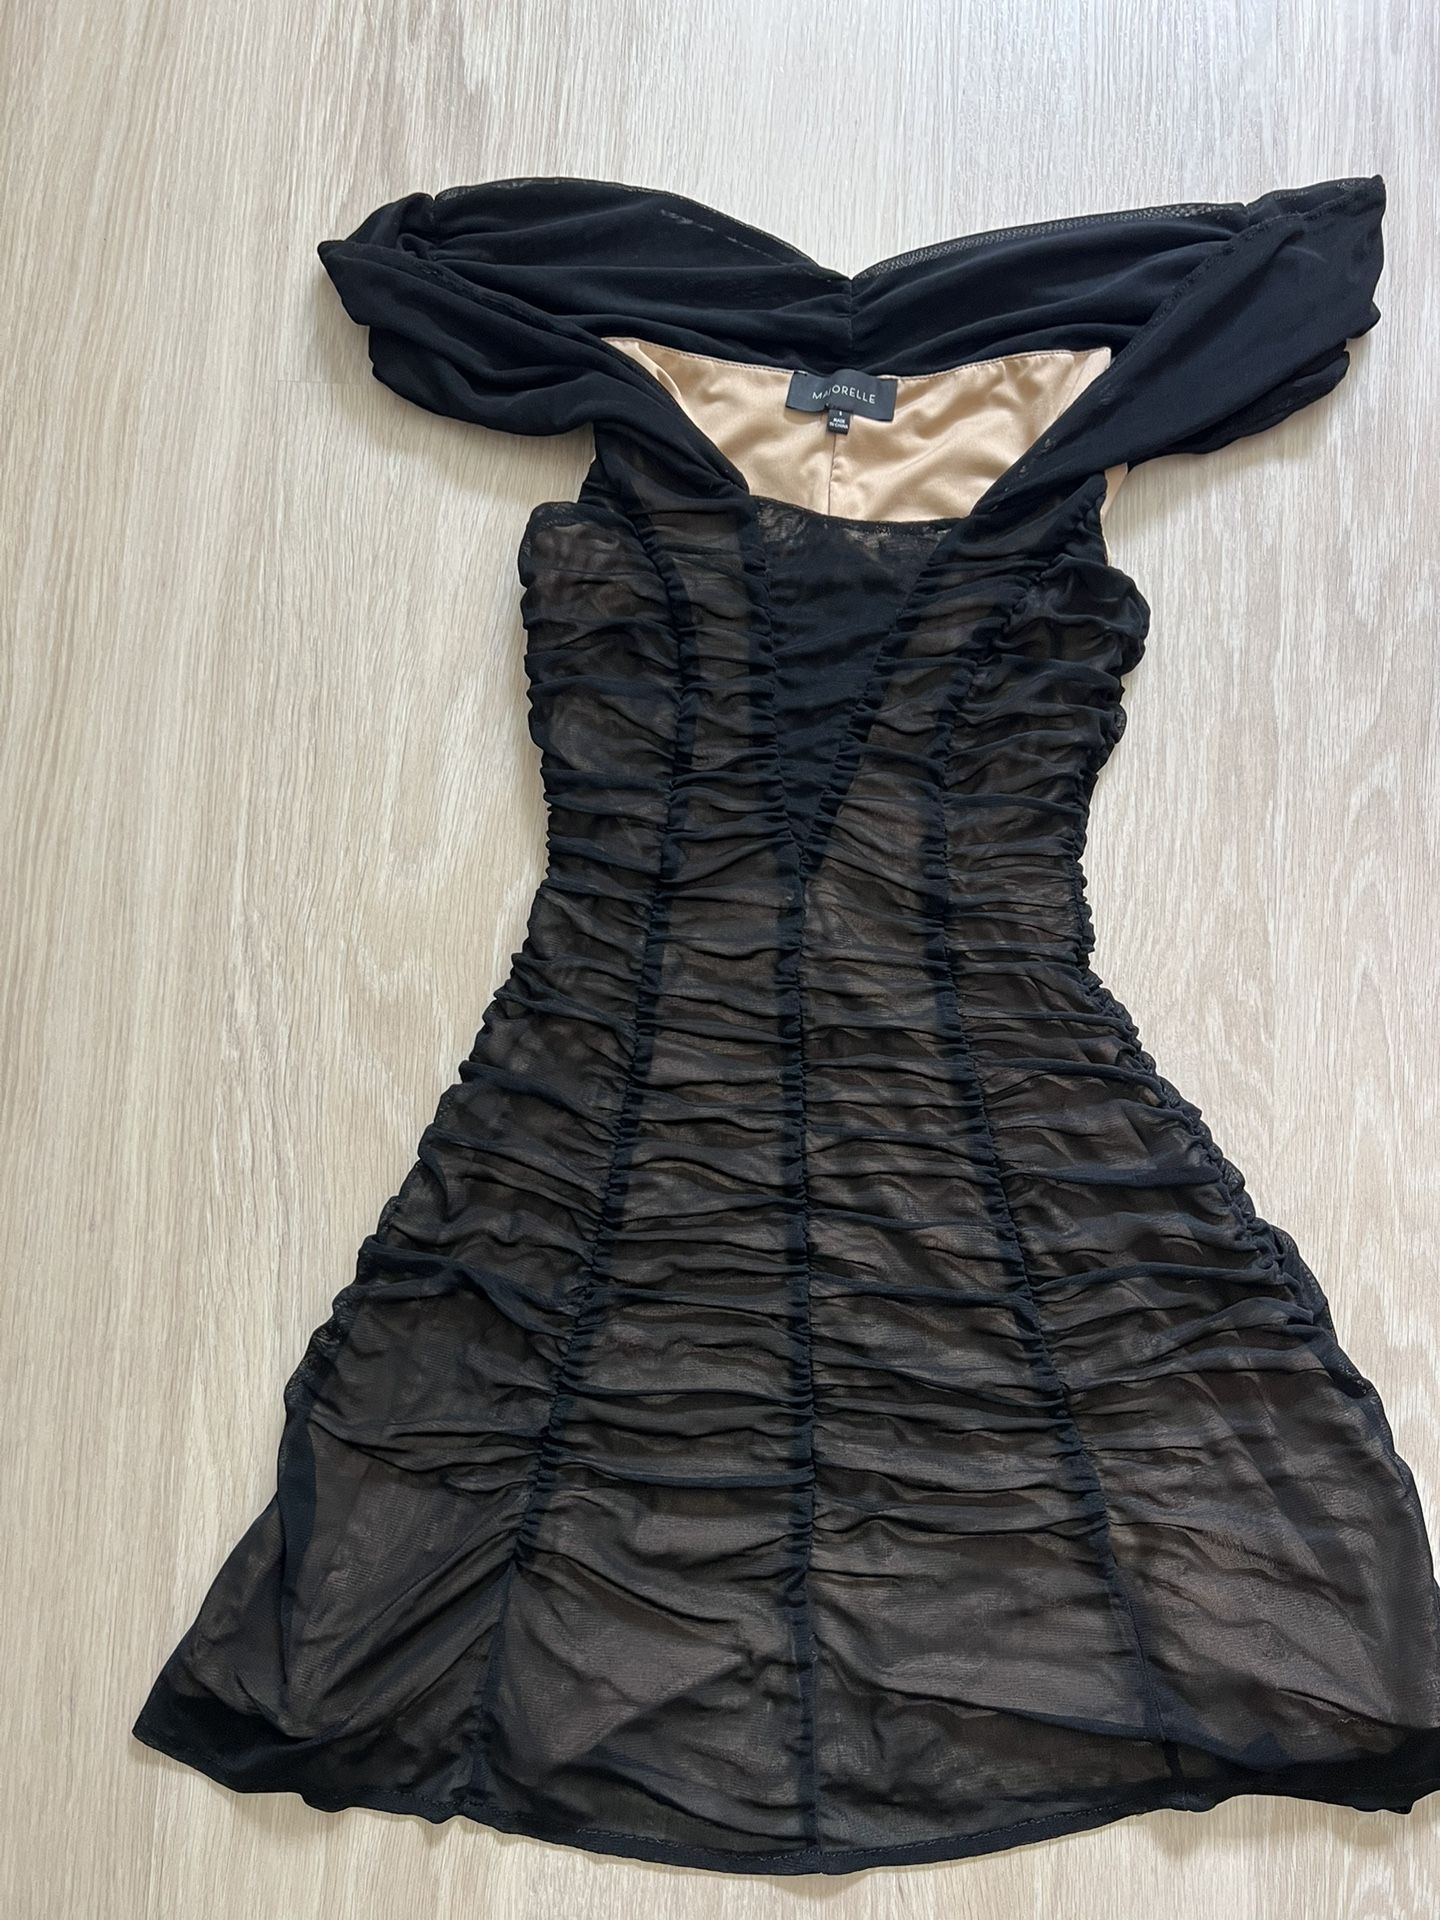 Majorelle Black Mini Dress Size S